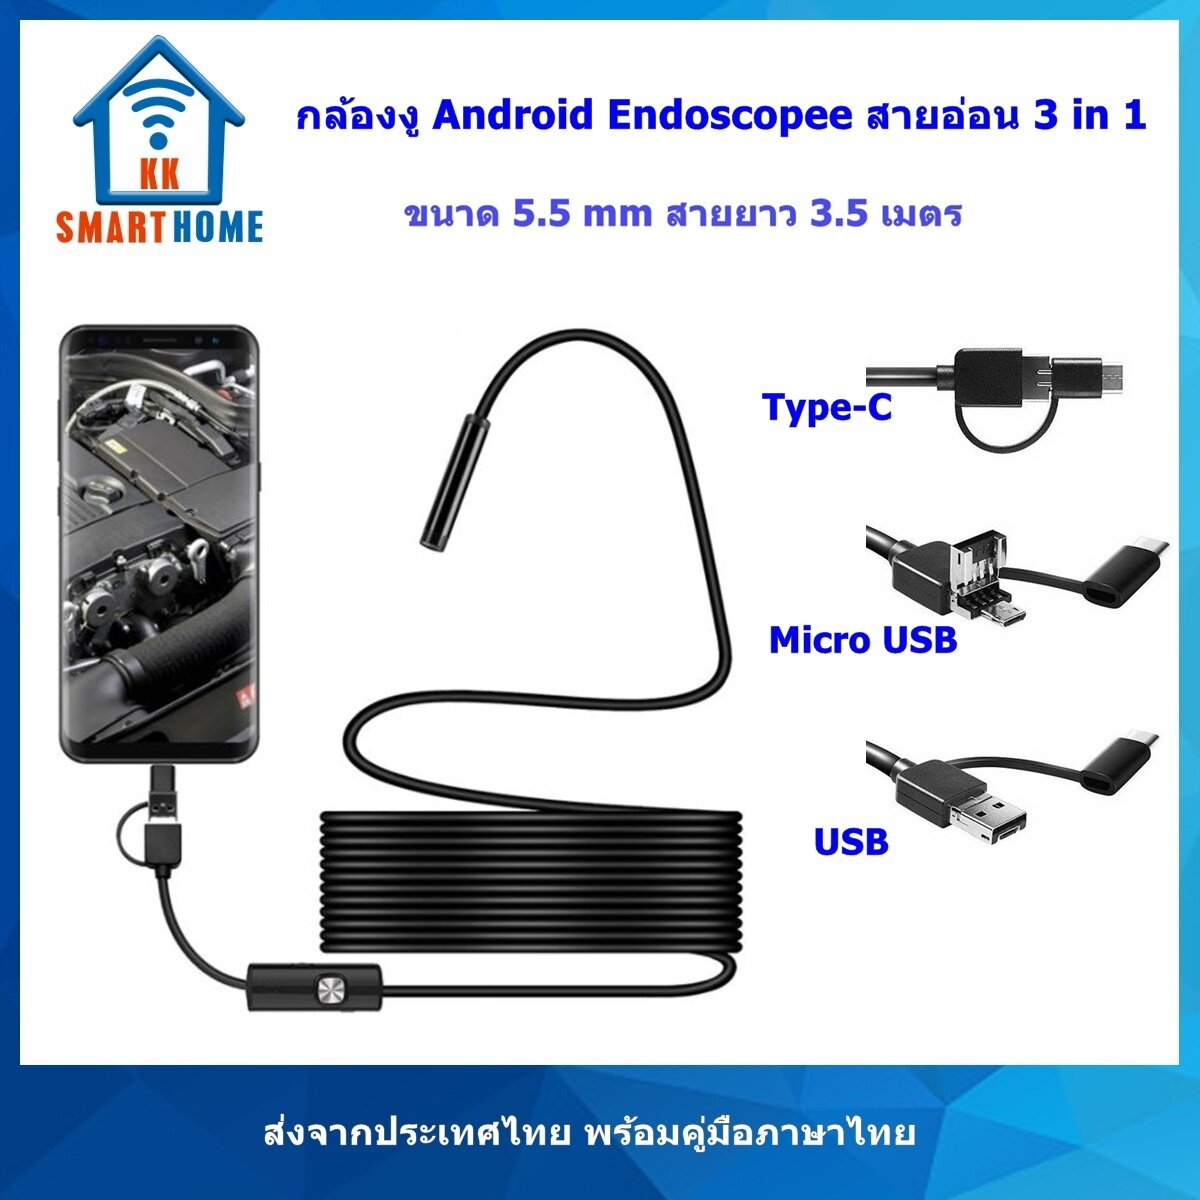 กล้องงู Android Endoscopic รุ่นสายอ่อน. 640x480 ใช้กับ Android ที่รองรับ USB2.0 OTG เท่านั้น